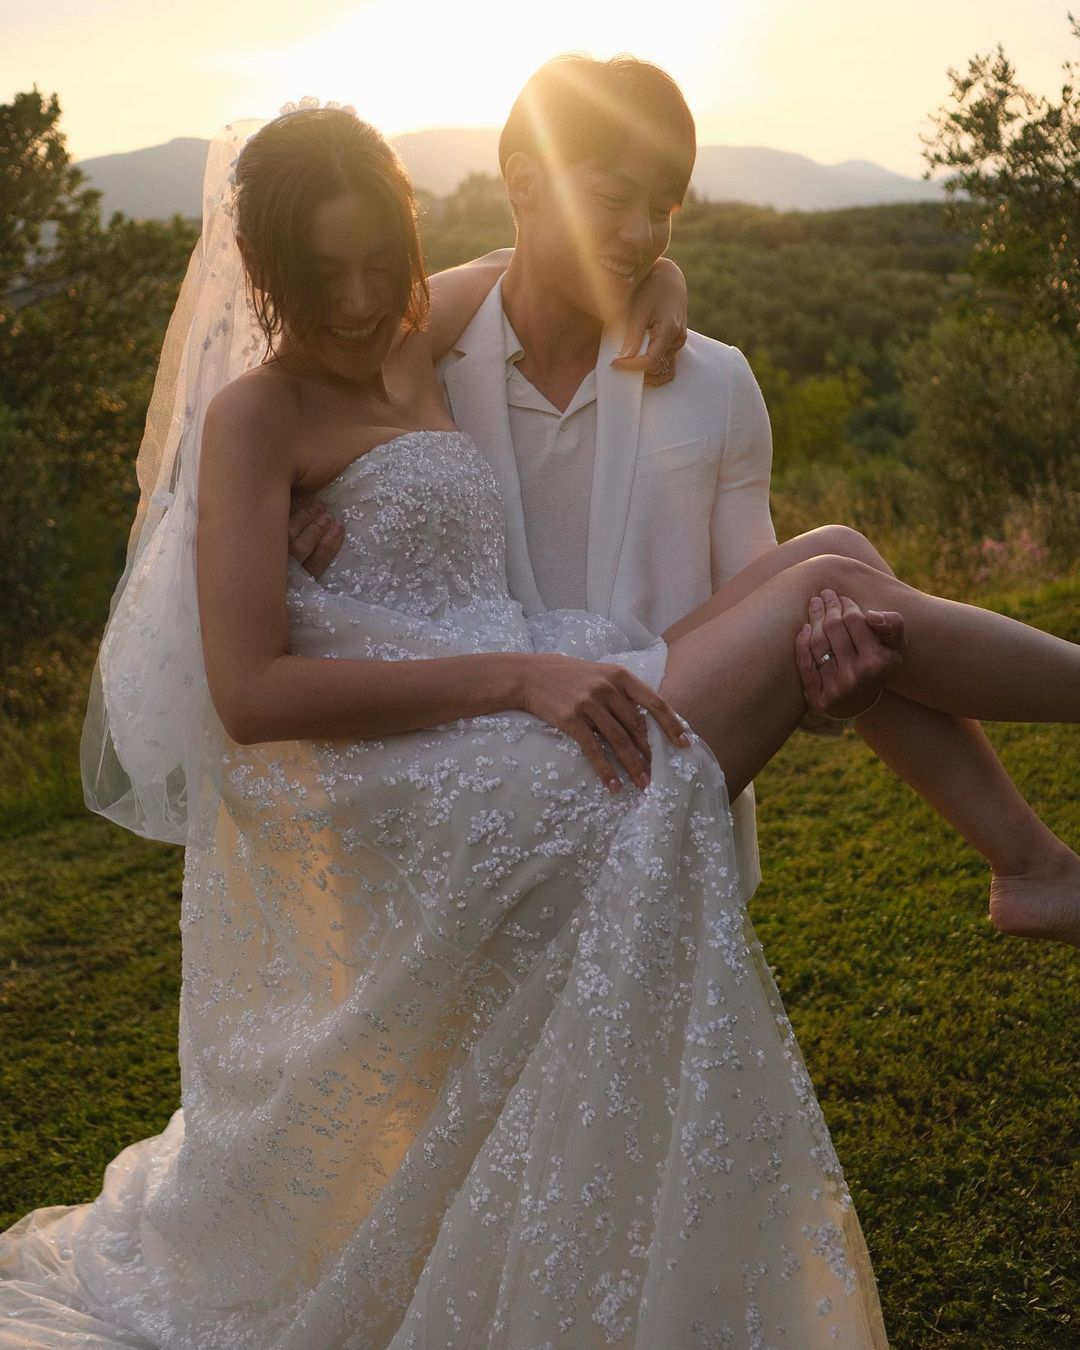 Mark Prin - Kimmy Kimberley tung ảnh cưới đẹp như phim, nhan sắc cả đôi và  nụ hôn giữa nước Ý gây sốt